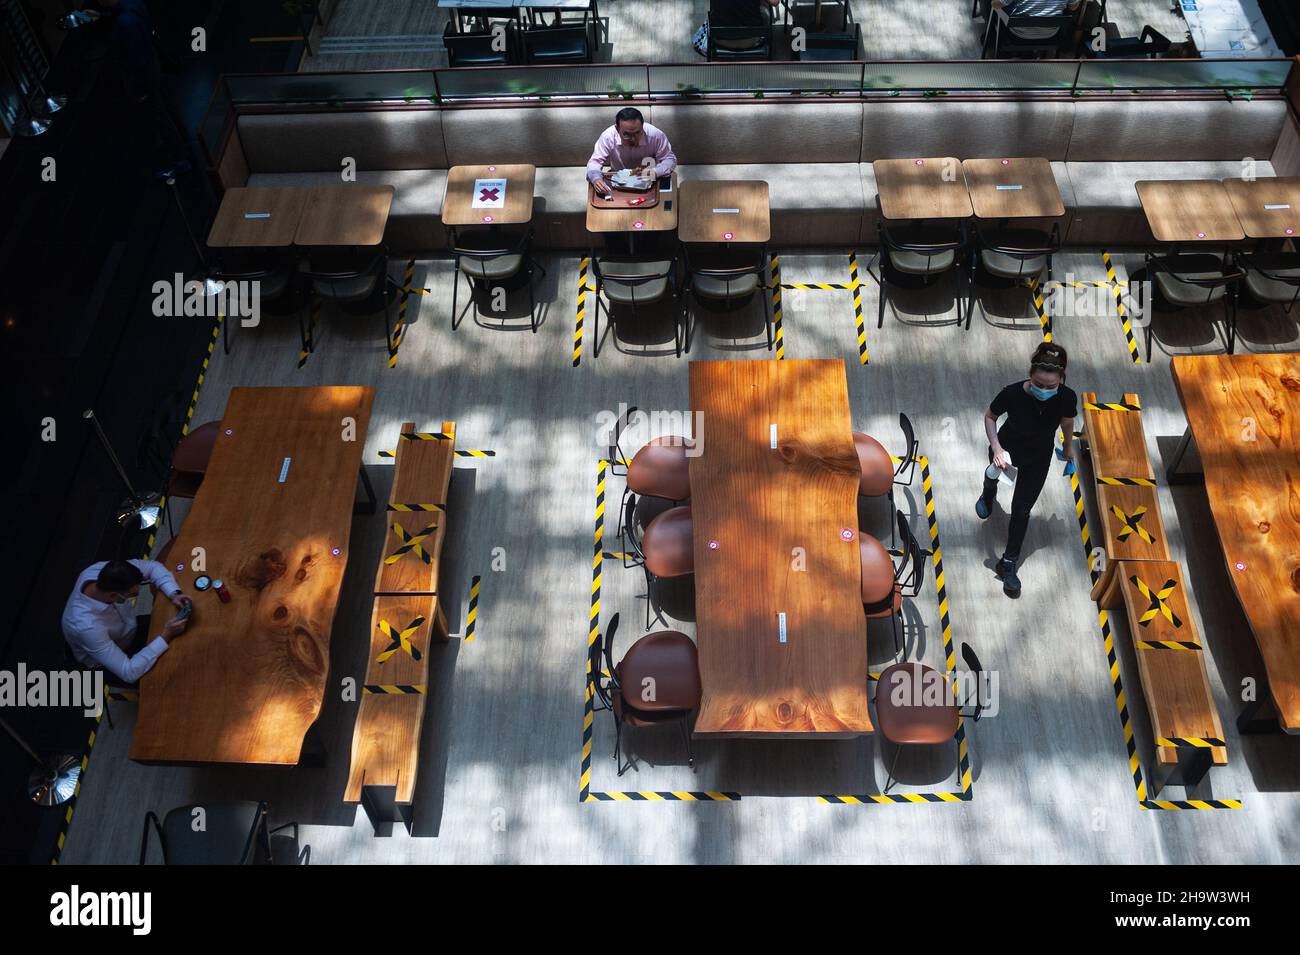 '15.09.2021, Singapur, , Singapur - die Menschen essen in einem Restaurant in einem Einkaufszentrum von Raffles Place, wo Tische und Bänke mit Klebeband für li markiert sind Stockfoto